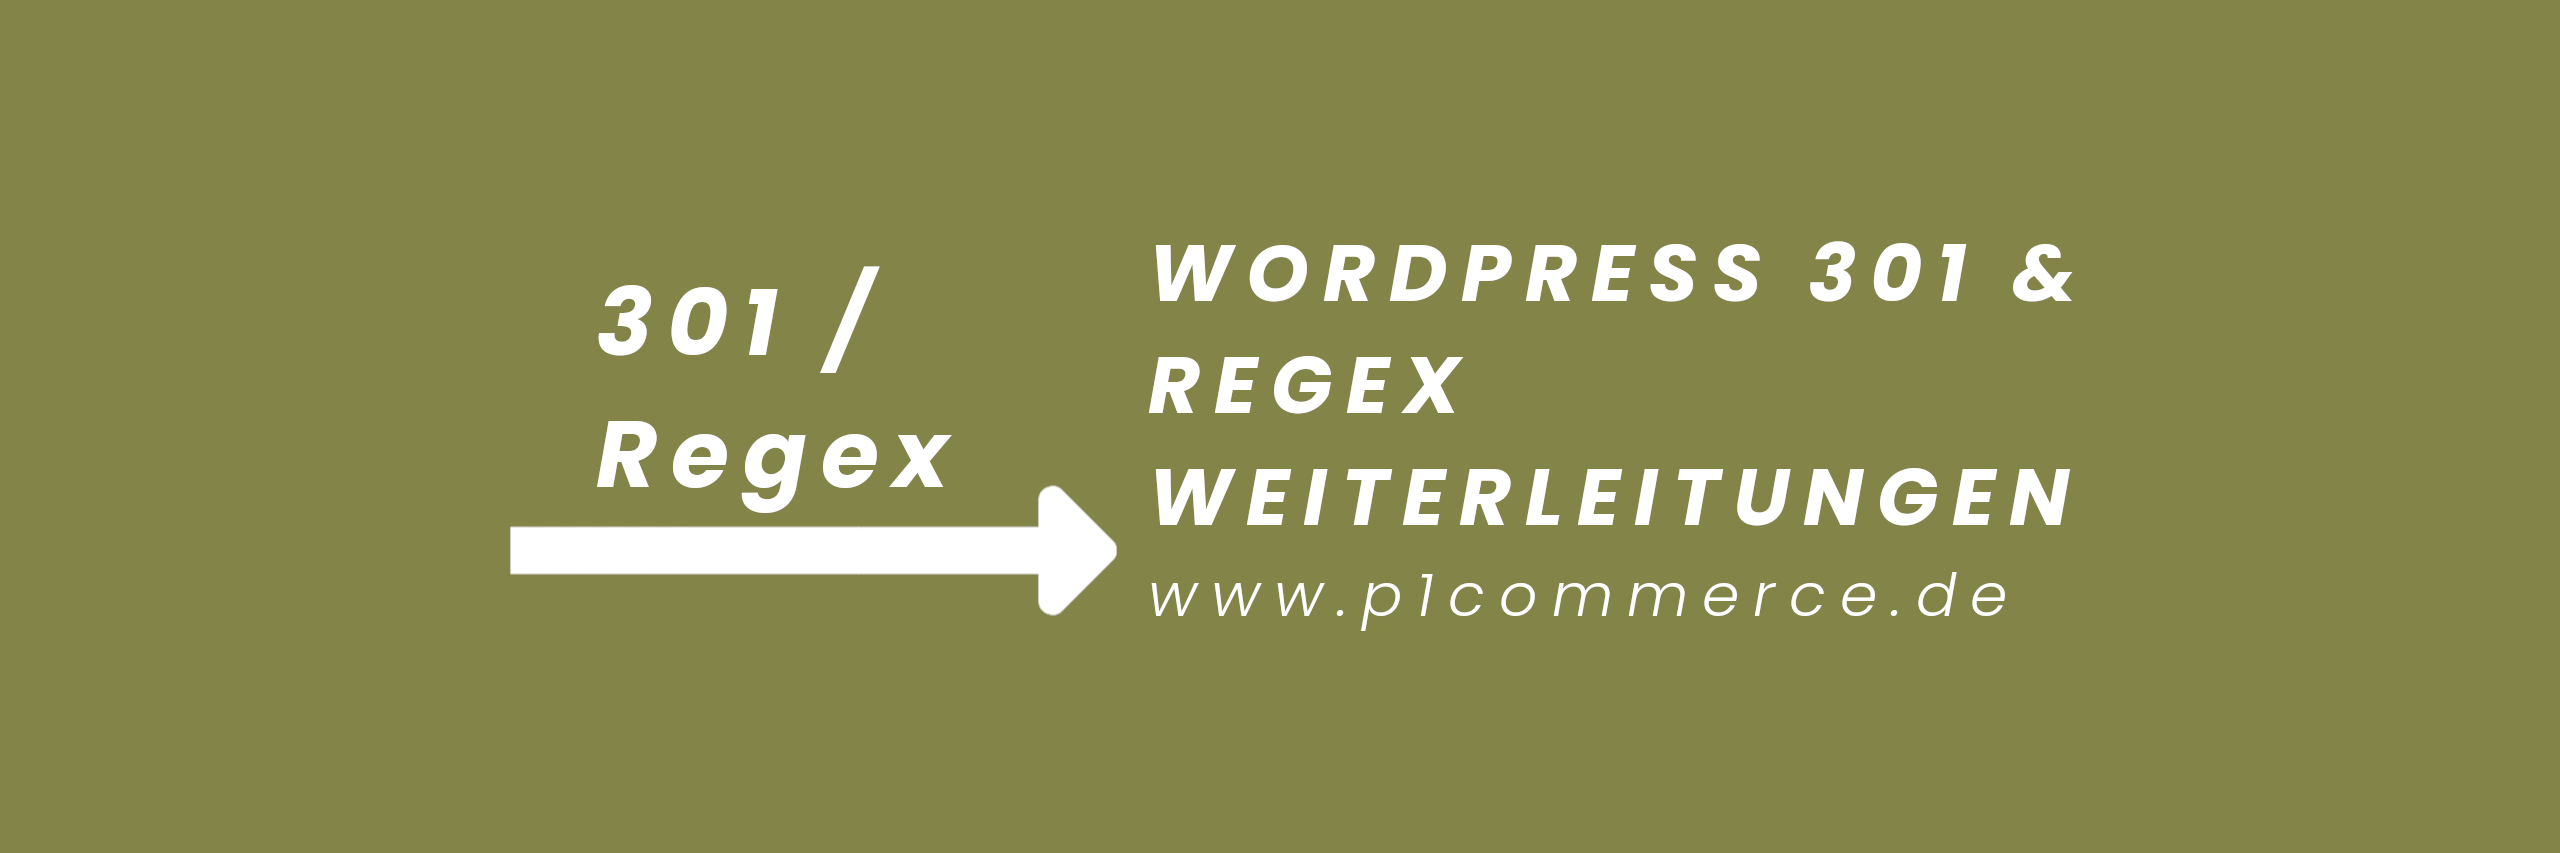 Wordpress 301 Regex Weiterleitungen